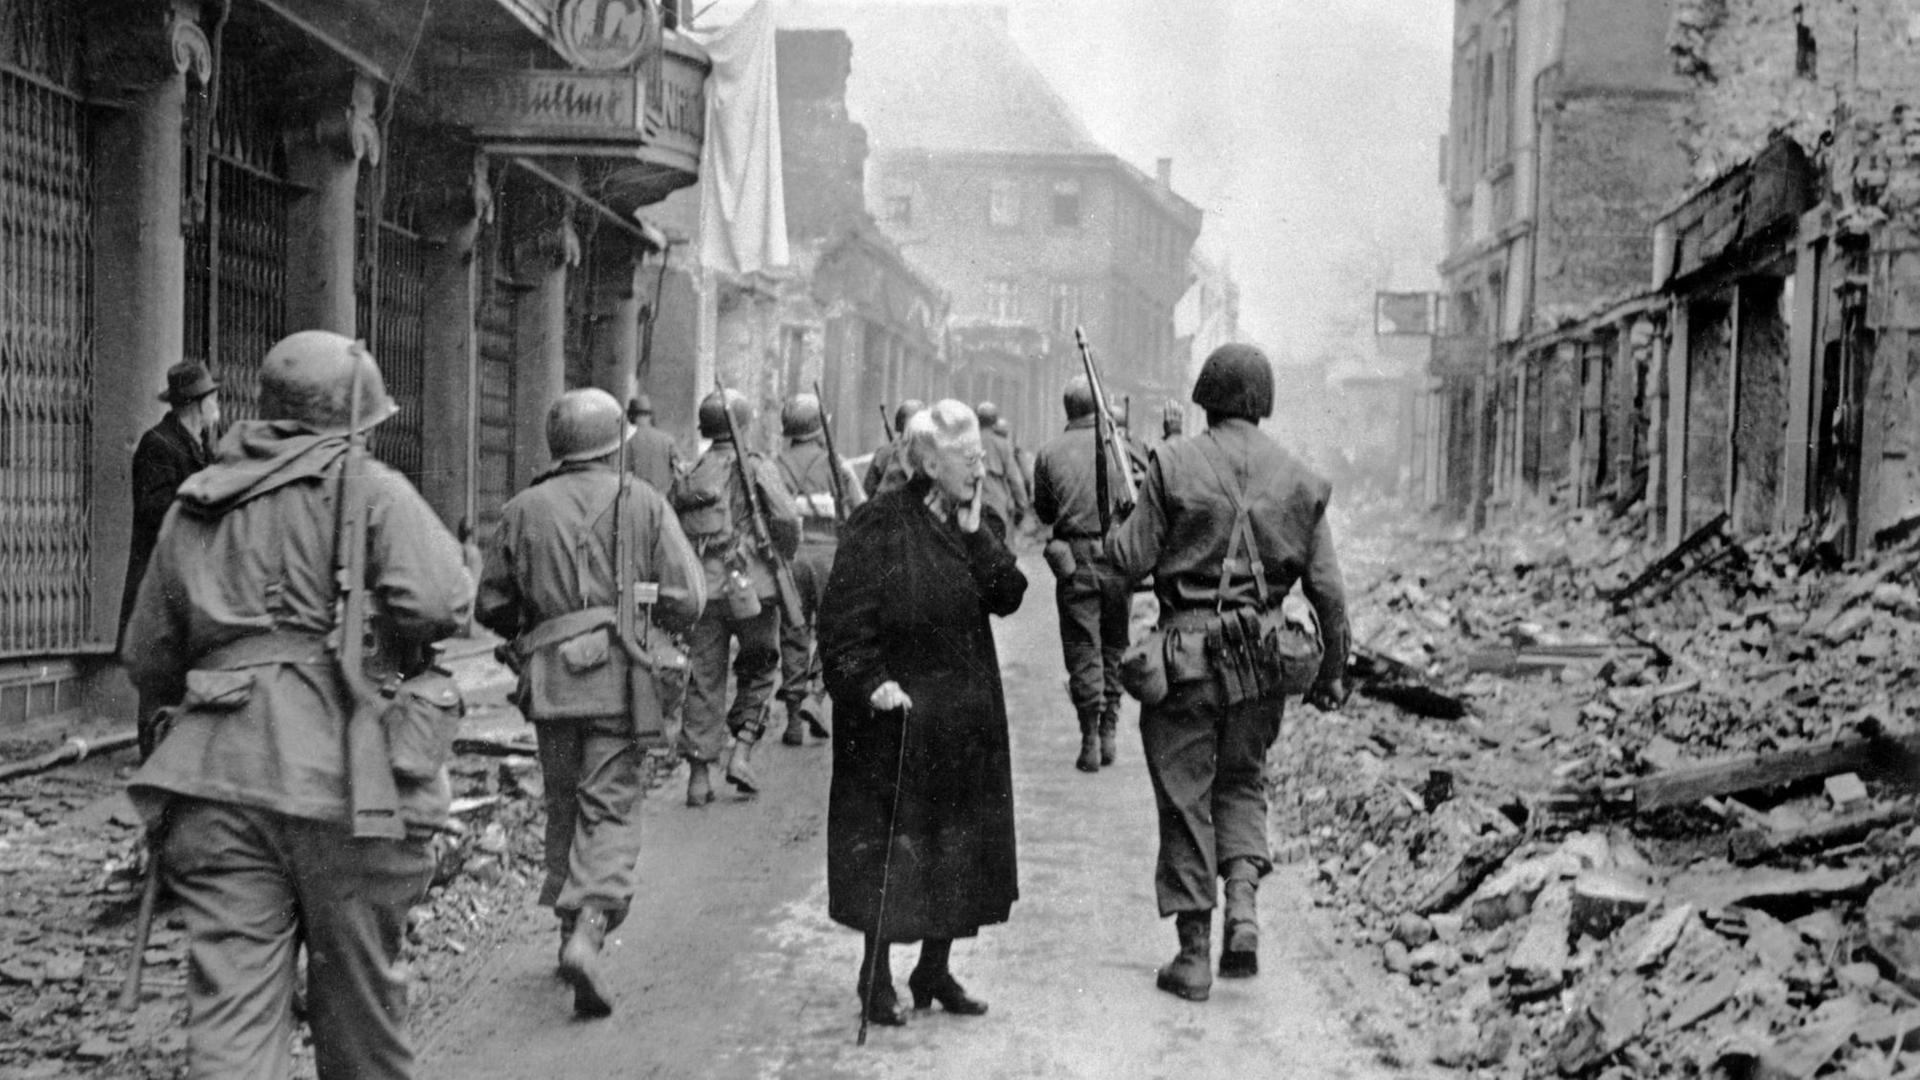 Fassungslos steht eine alte Frau in den Trümmern der Stadt Bensheim, während US-Soldaten an ihr vorbei marschieren.